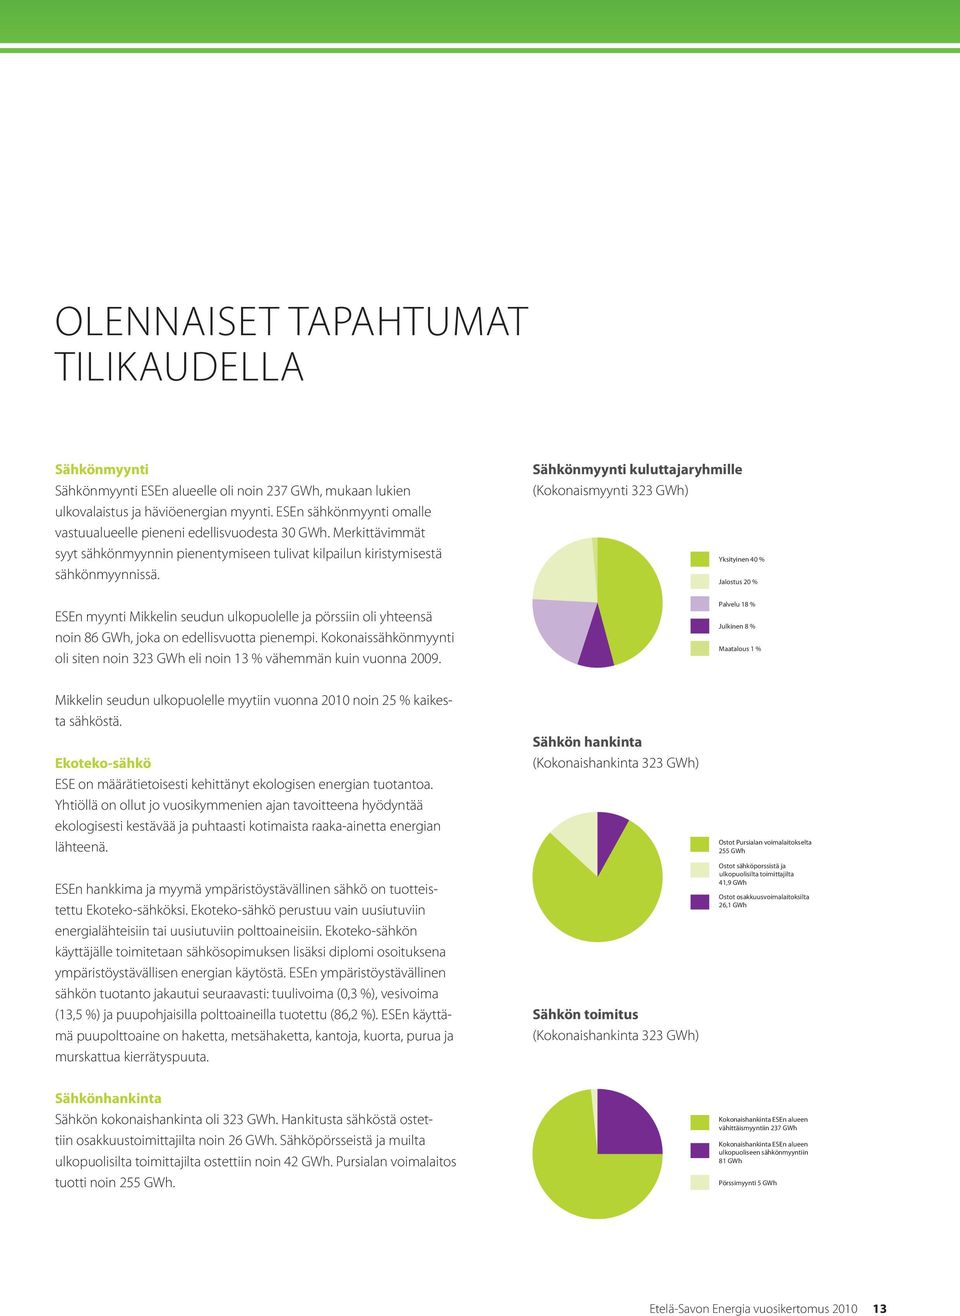 ESEn myynti Mikkelin seudun ulkopuolelle ja pörssiin oli yhteensä noin 86 GWh, joka on edellisvuotta pienempi. Kokonaissähkönmyynti oli siten noin 323 GWh eli noin 13 % vähemmän kuin vuonna 2009.